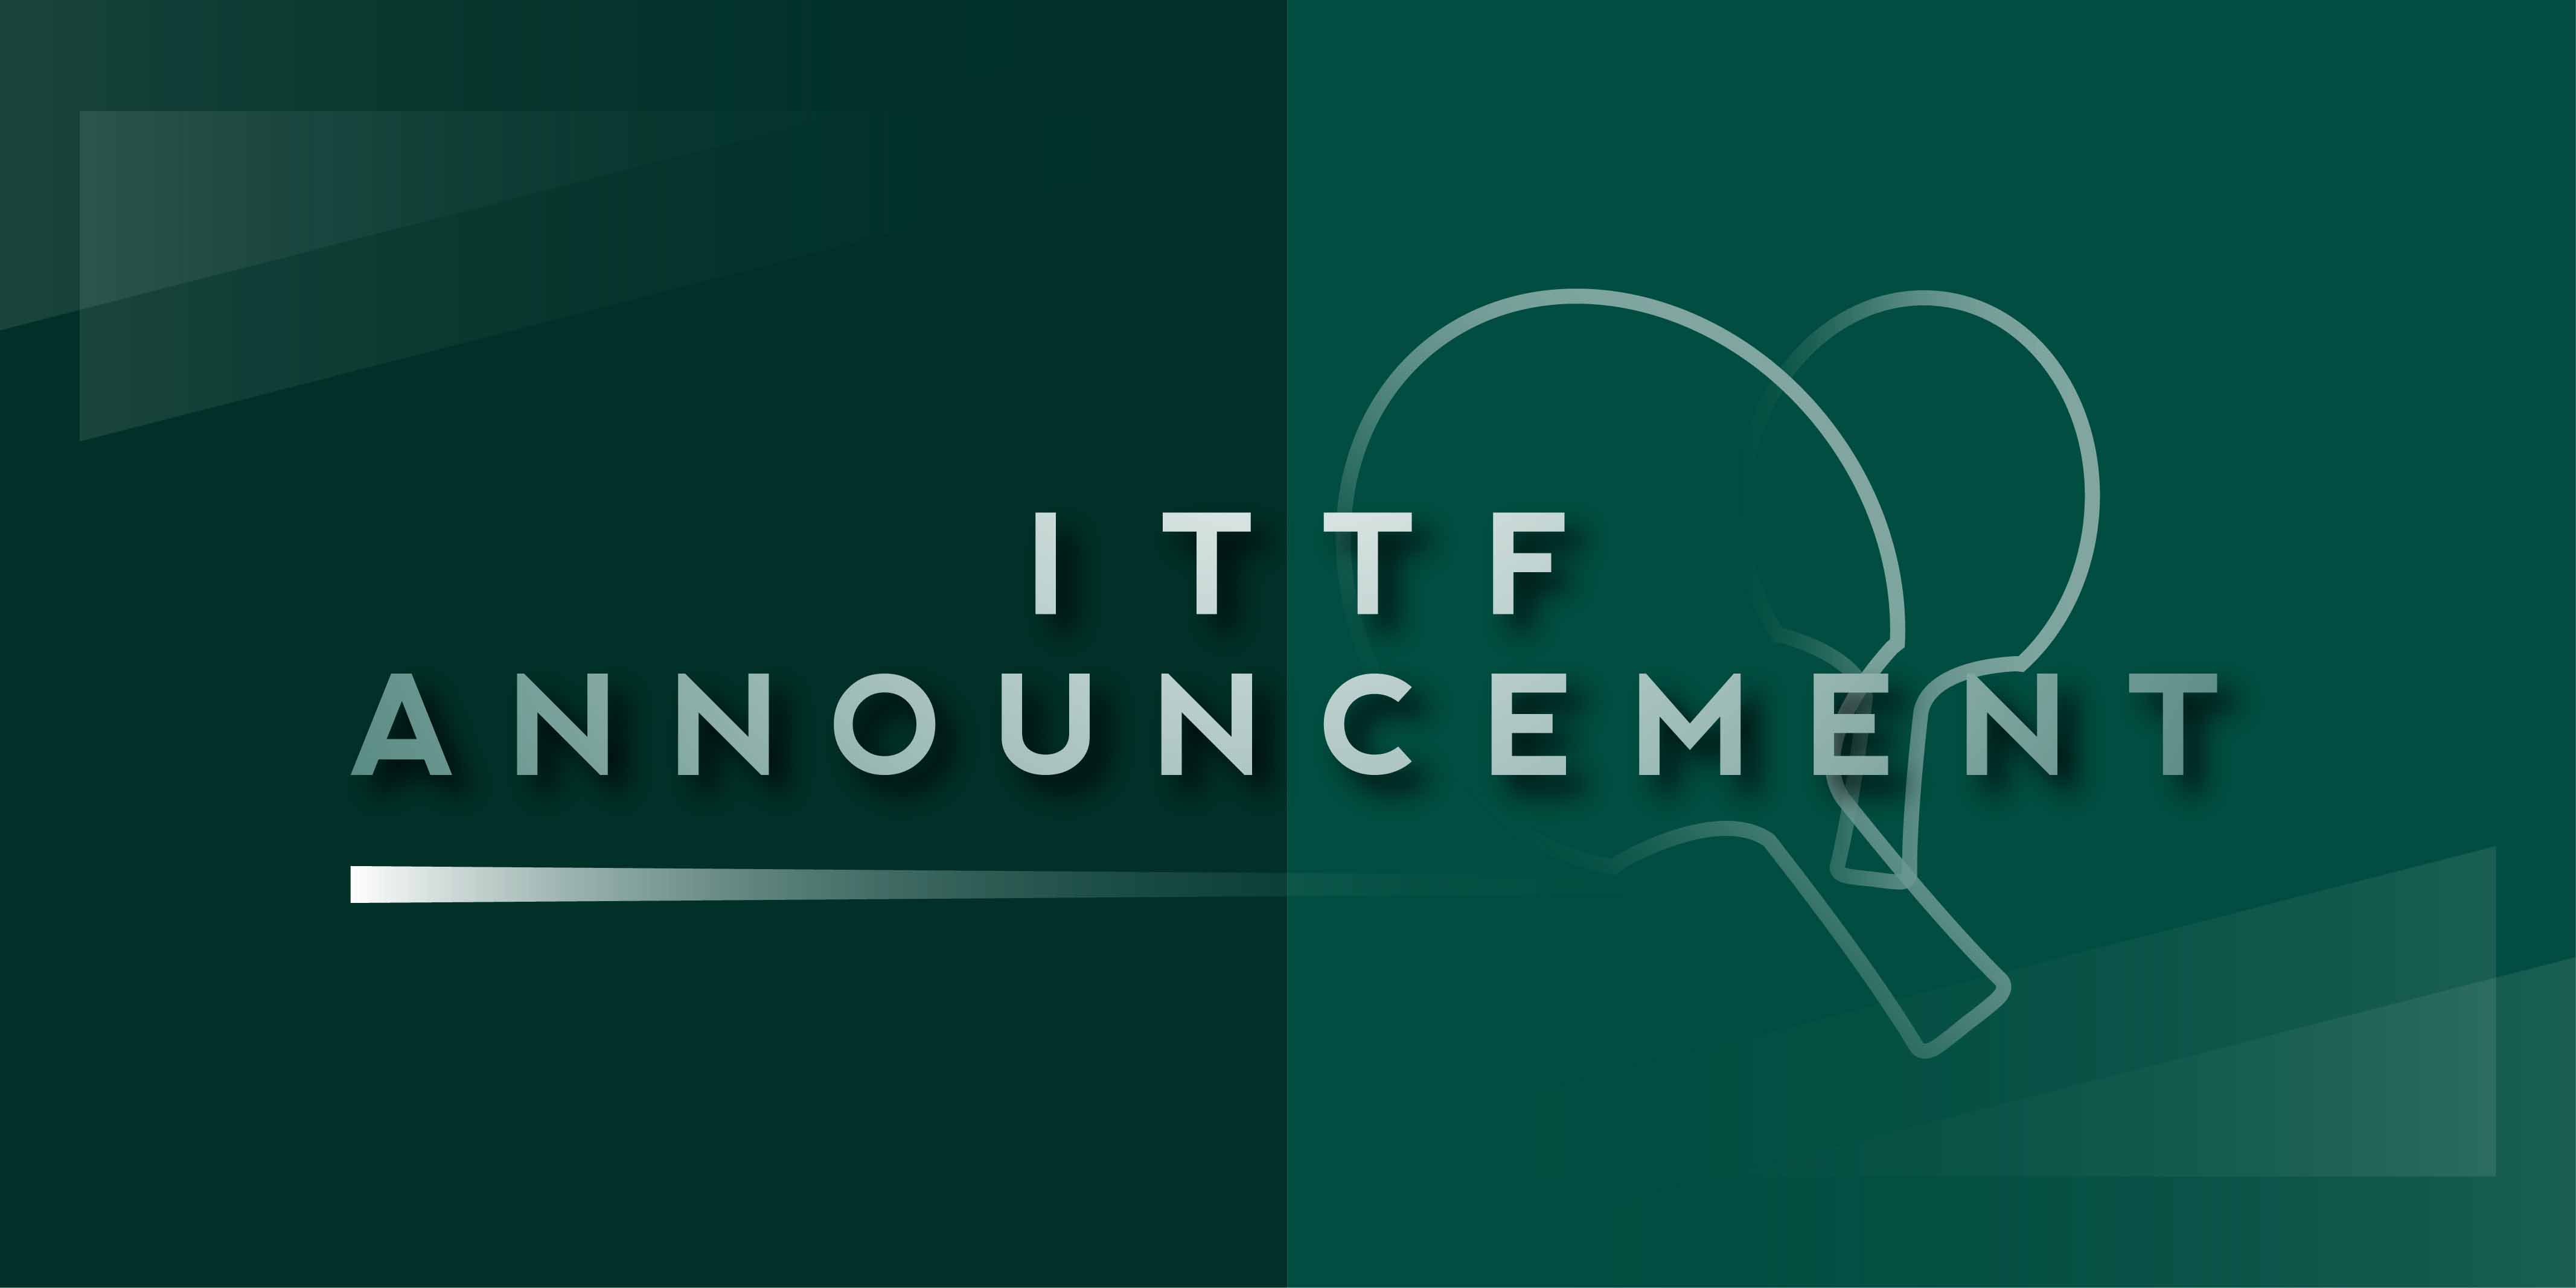 ITTF Announcement